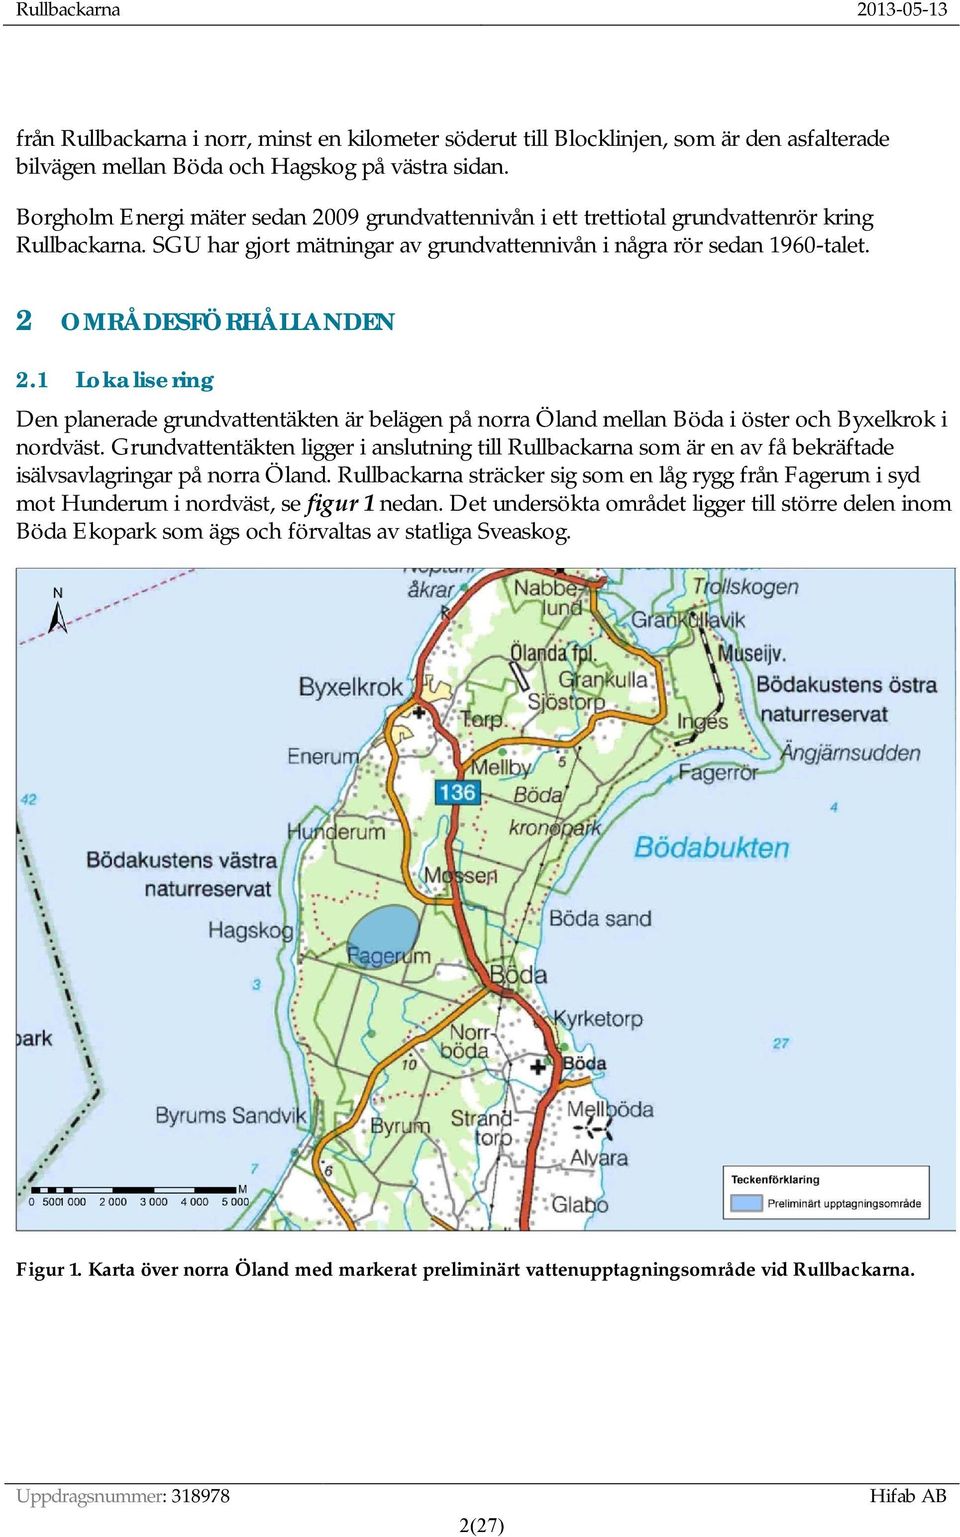 1 Lokalisering Den planerade grundvattentäkten är belägen på norra Öland mellan Böda i öster och Byxelkrok i nordväst.